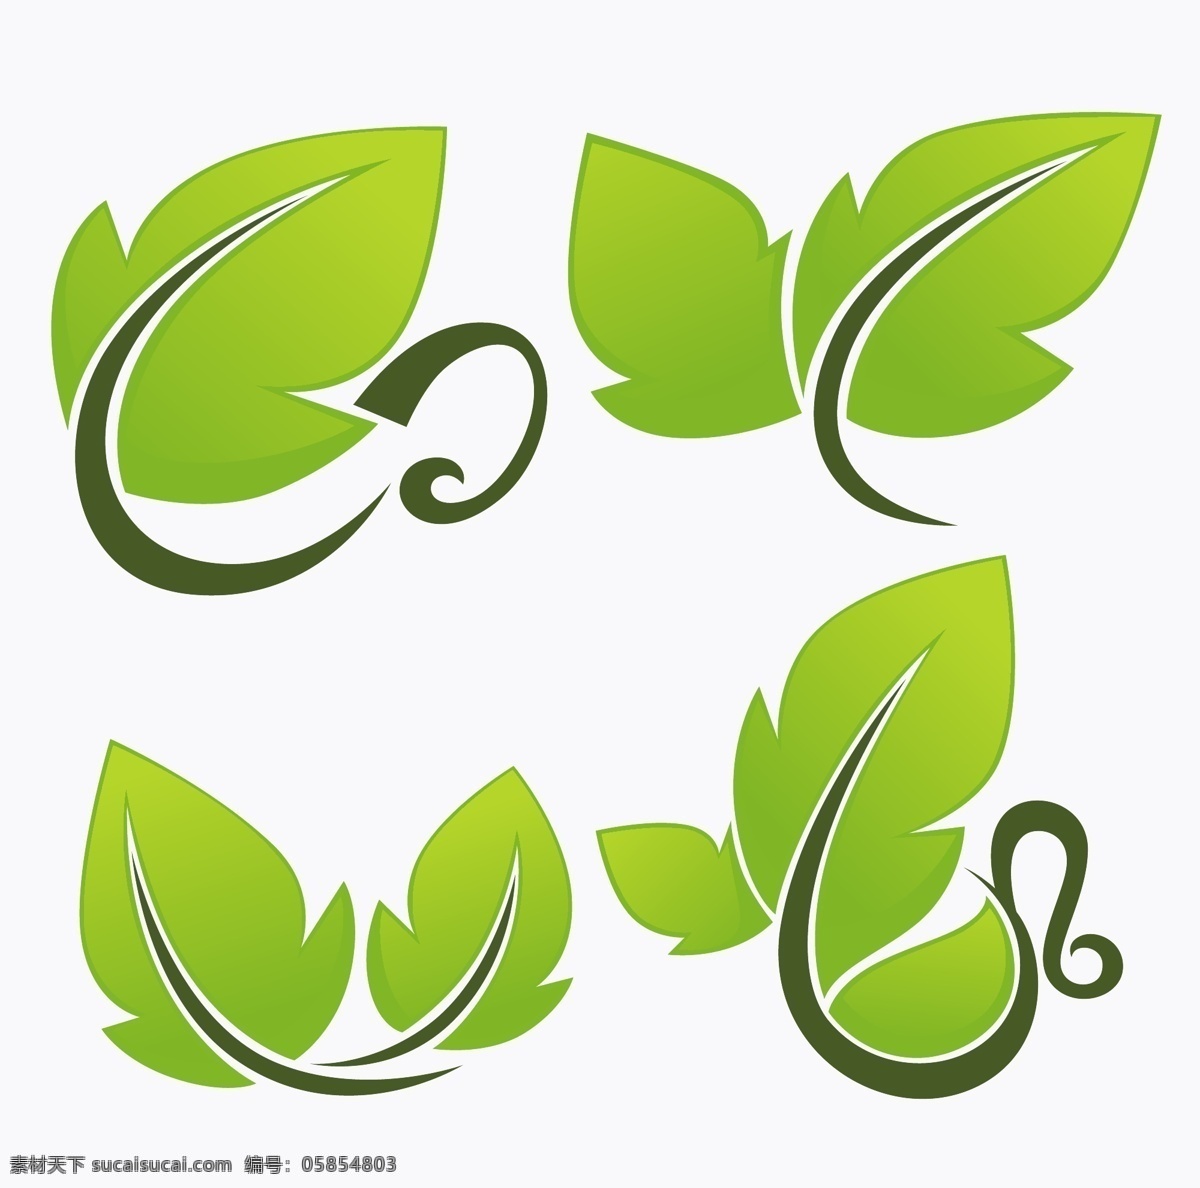 logo 爱护 保护 标识 标识标志图标 标志 动感 关爱 环保 绿叶 矢量 模板下载 绿叶logo 线条 绿色环保 绿色 手绘 装饰 元素 生态 图标 小图标 psd源文件 logo设计